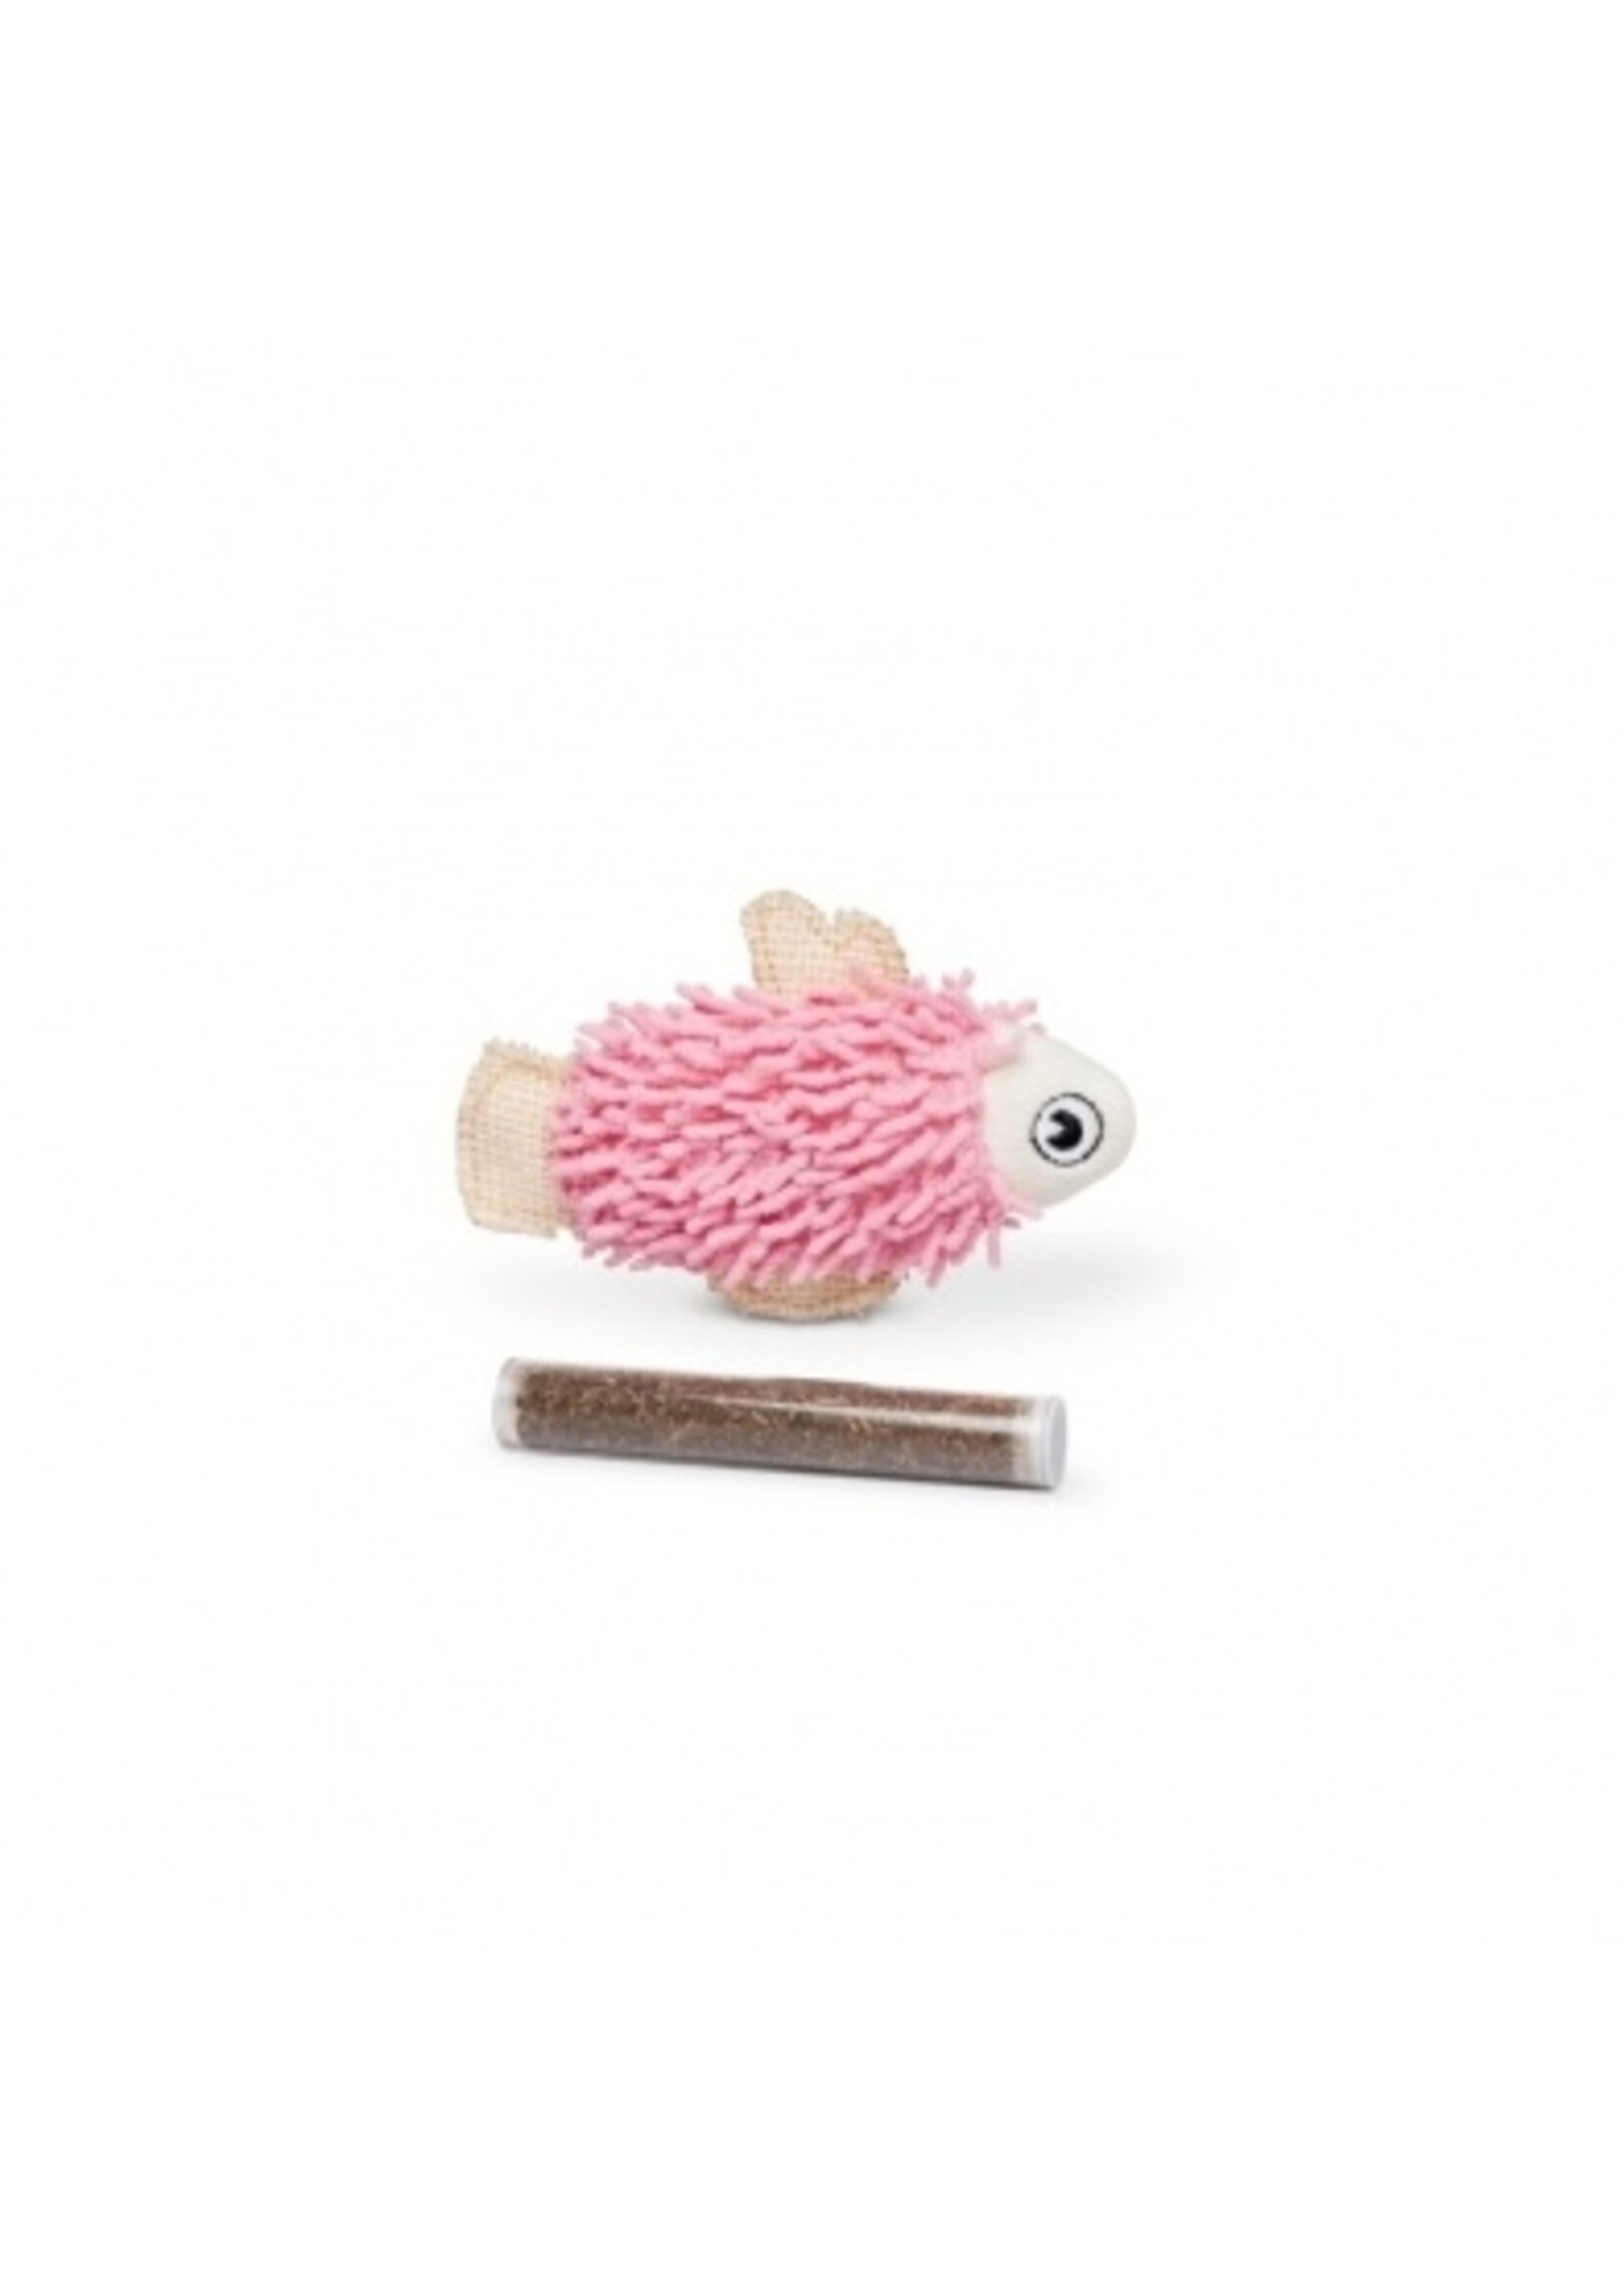 Budz Budz Pink Fish Cat Toy w/ Catnip Pocket 1 Tube 4.5"